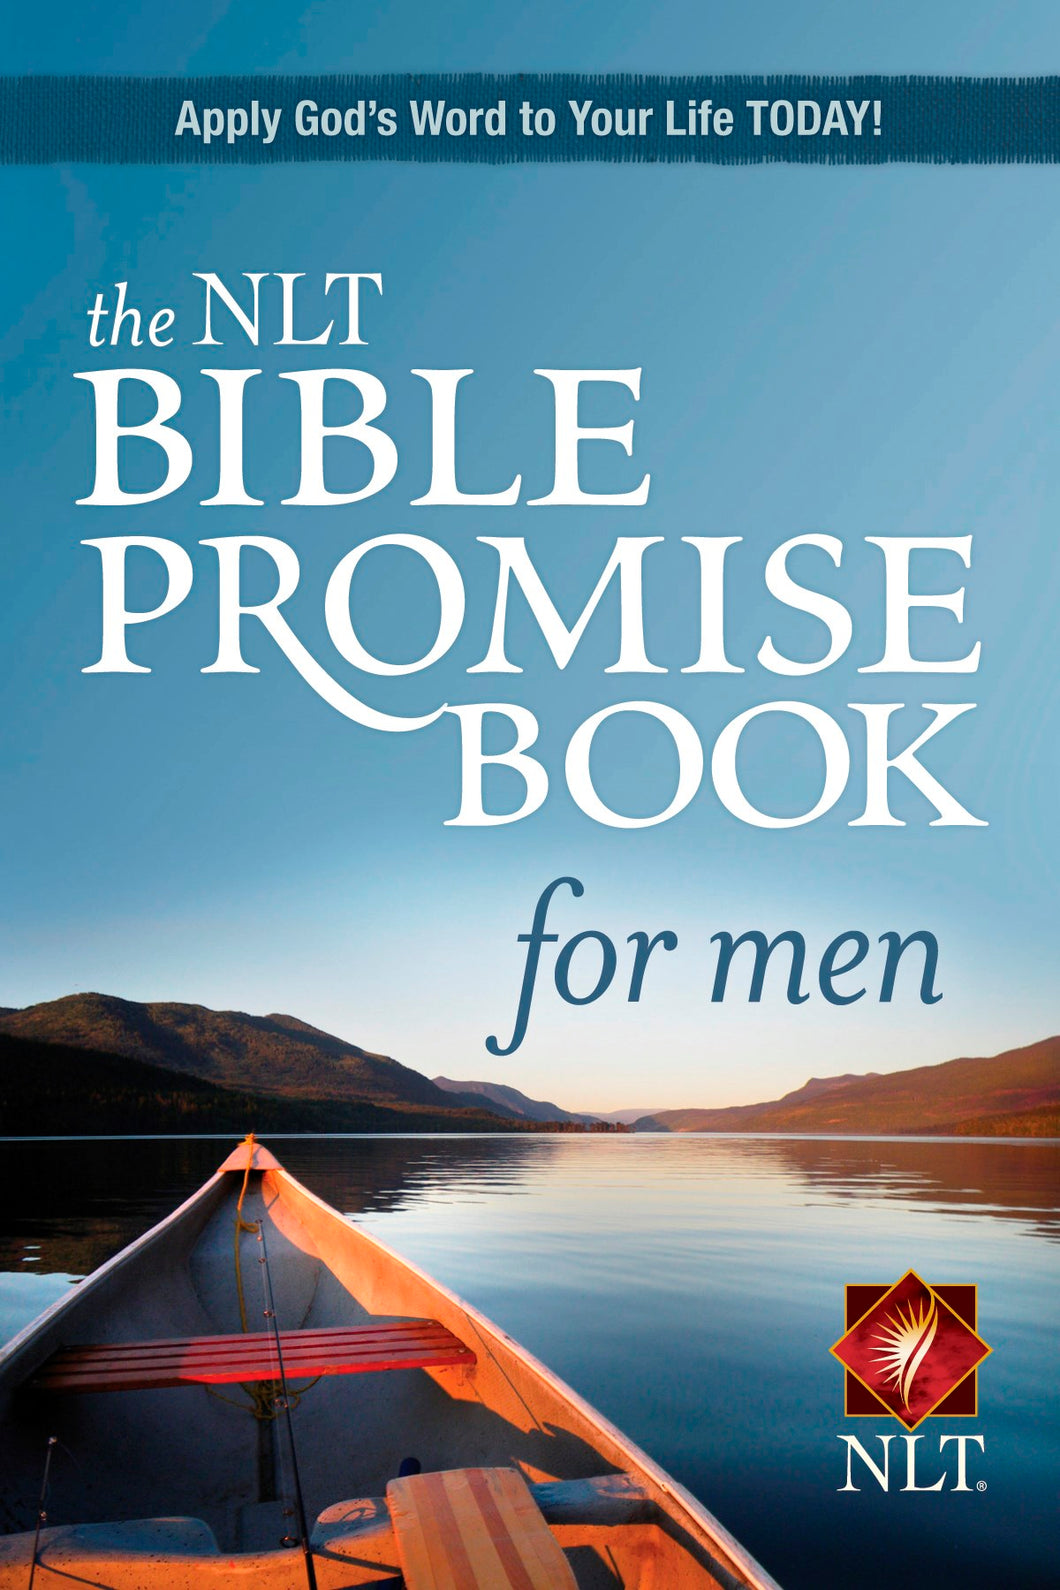 NLT Bible Promise Book For Men